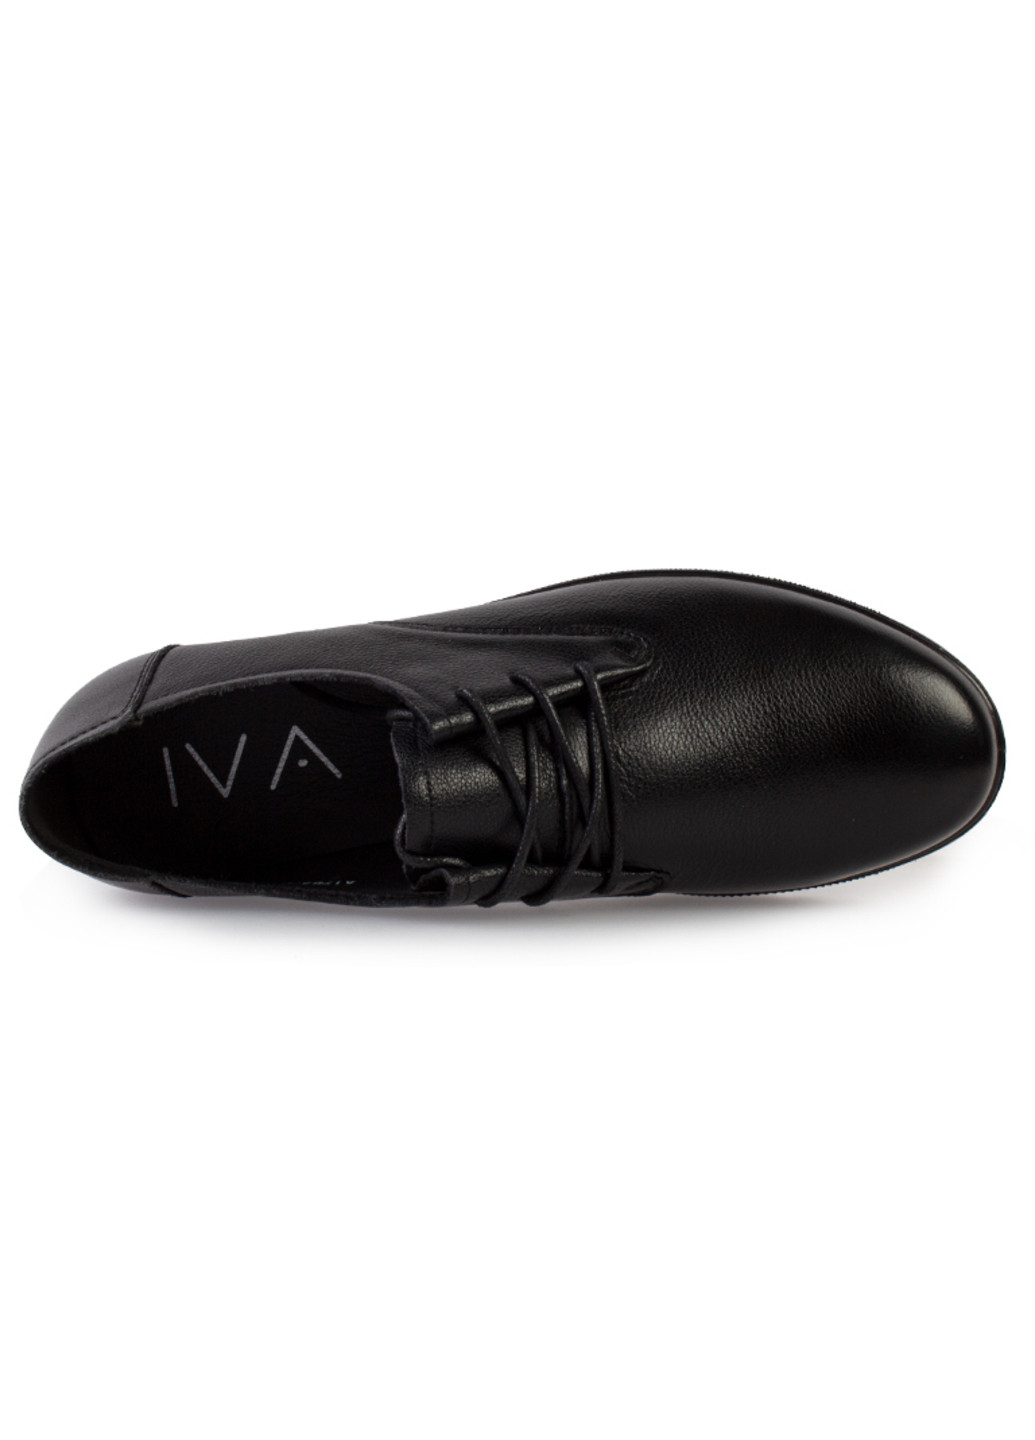 Туфли женские бренда 8200338_(1) Iva без каблука